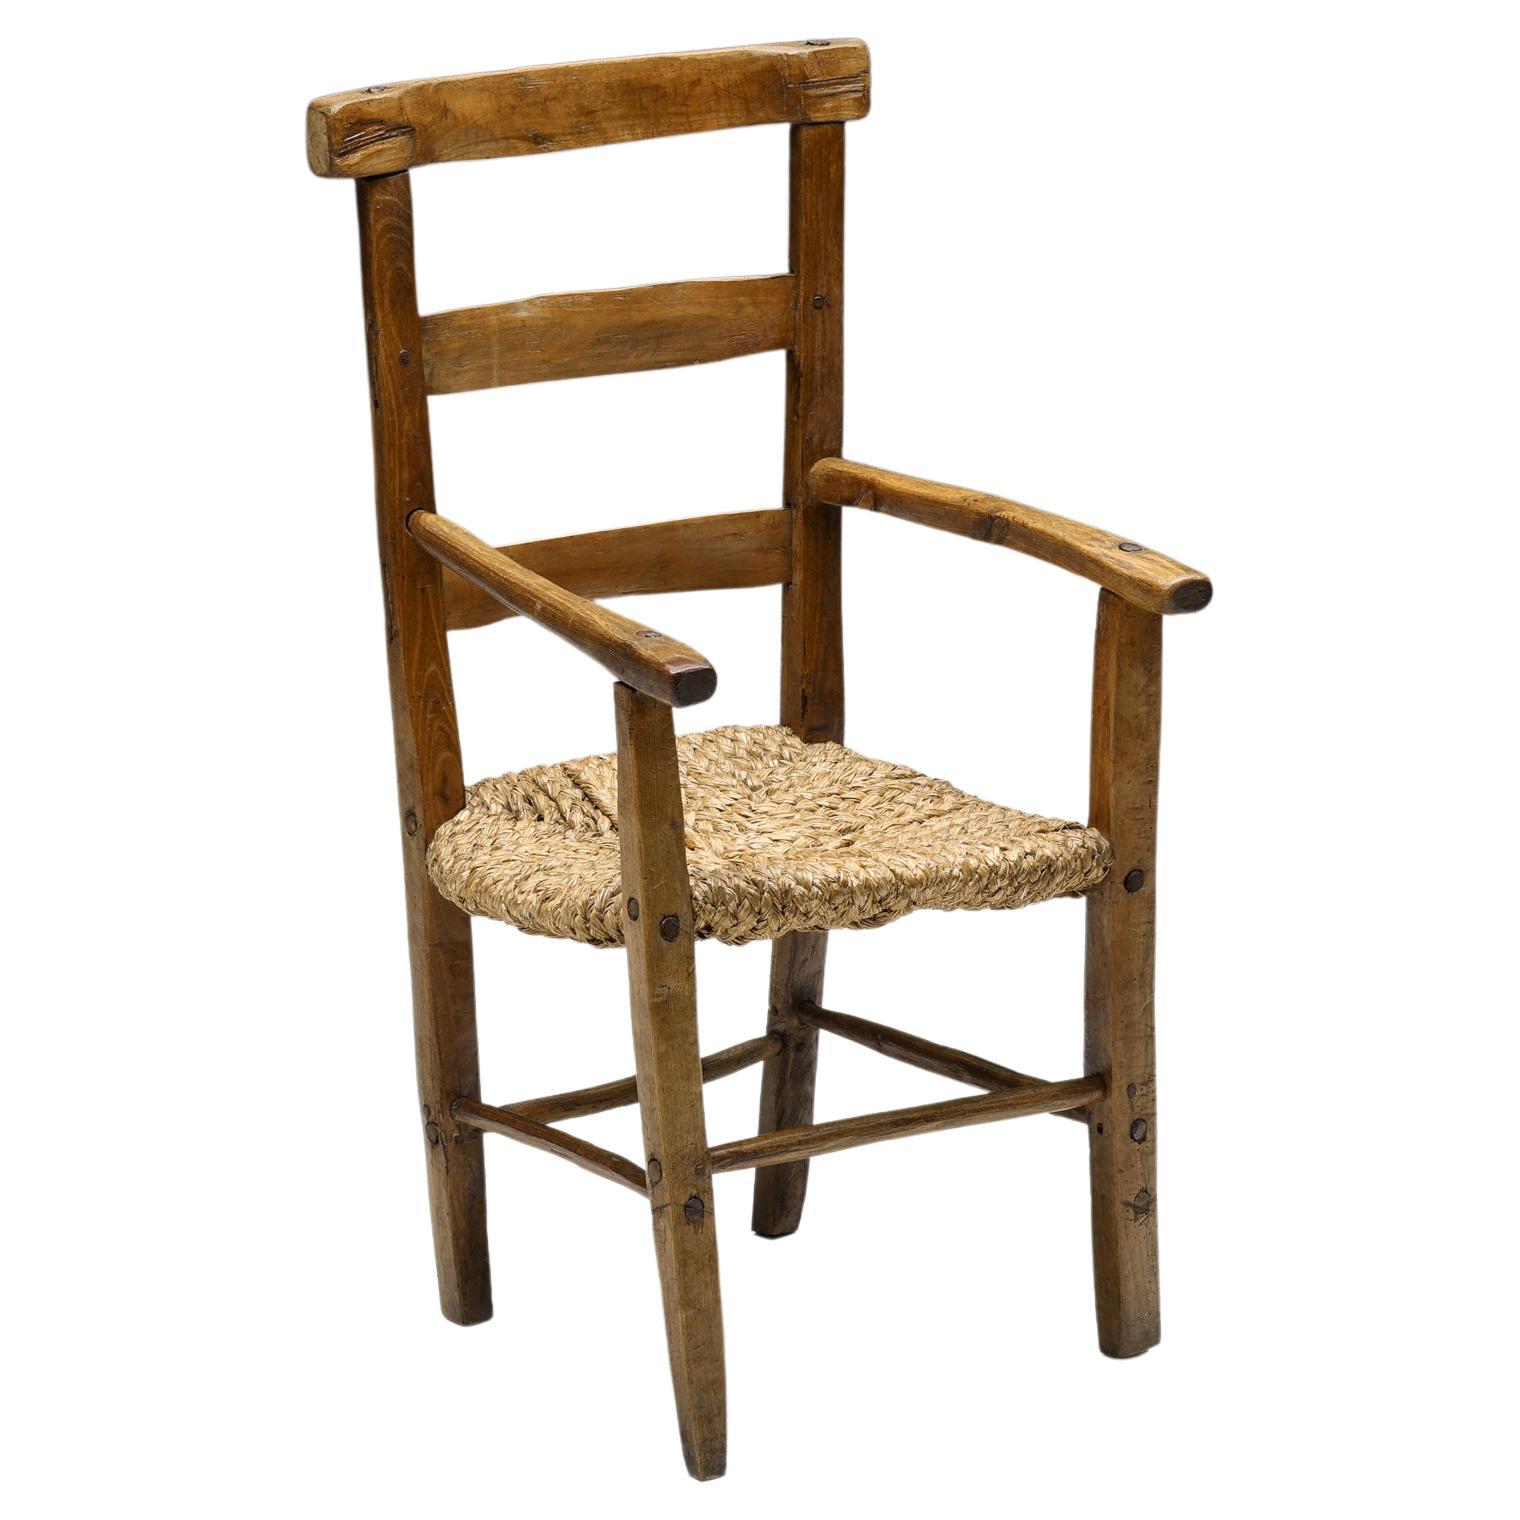 Wabi-Sabi Rustic Cord Arm Chair, 1940s